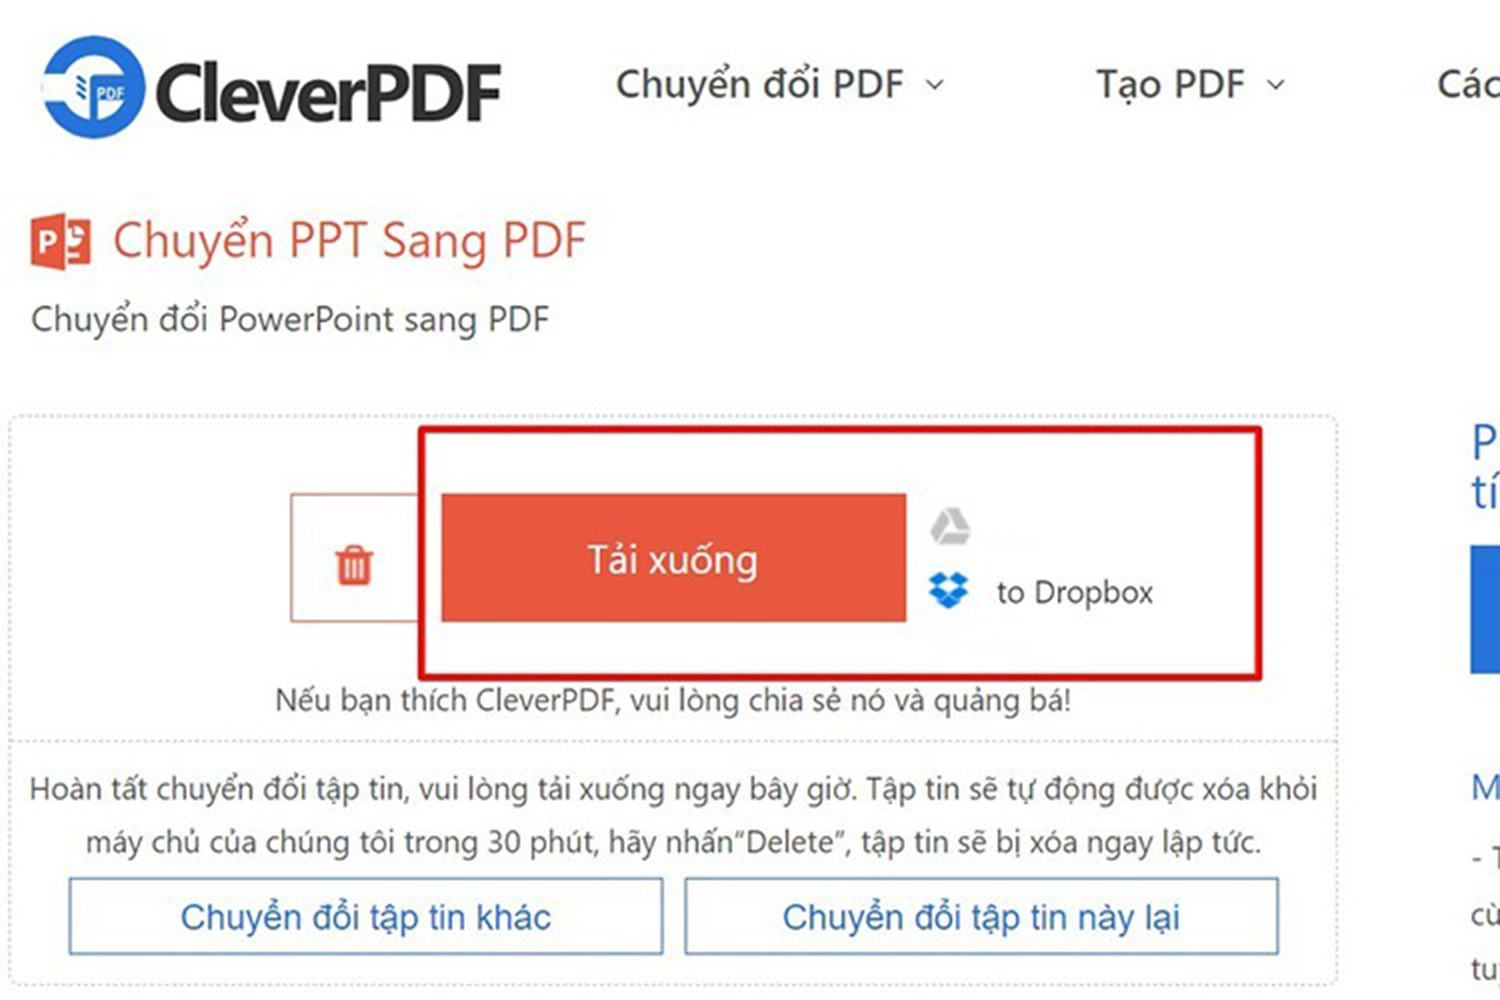 chuyen-powerpoint-sang-pdf-chon-tai-xuong